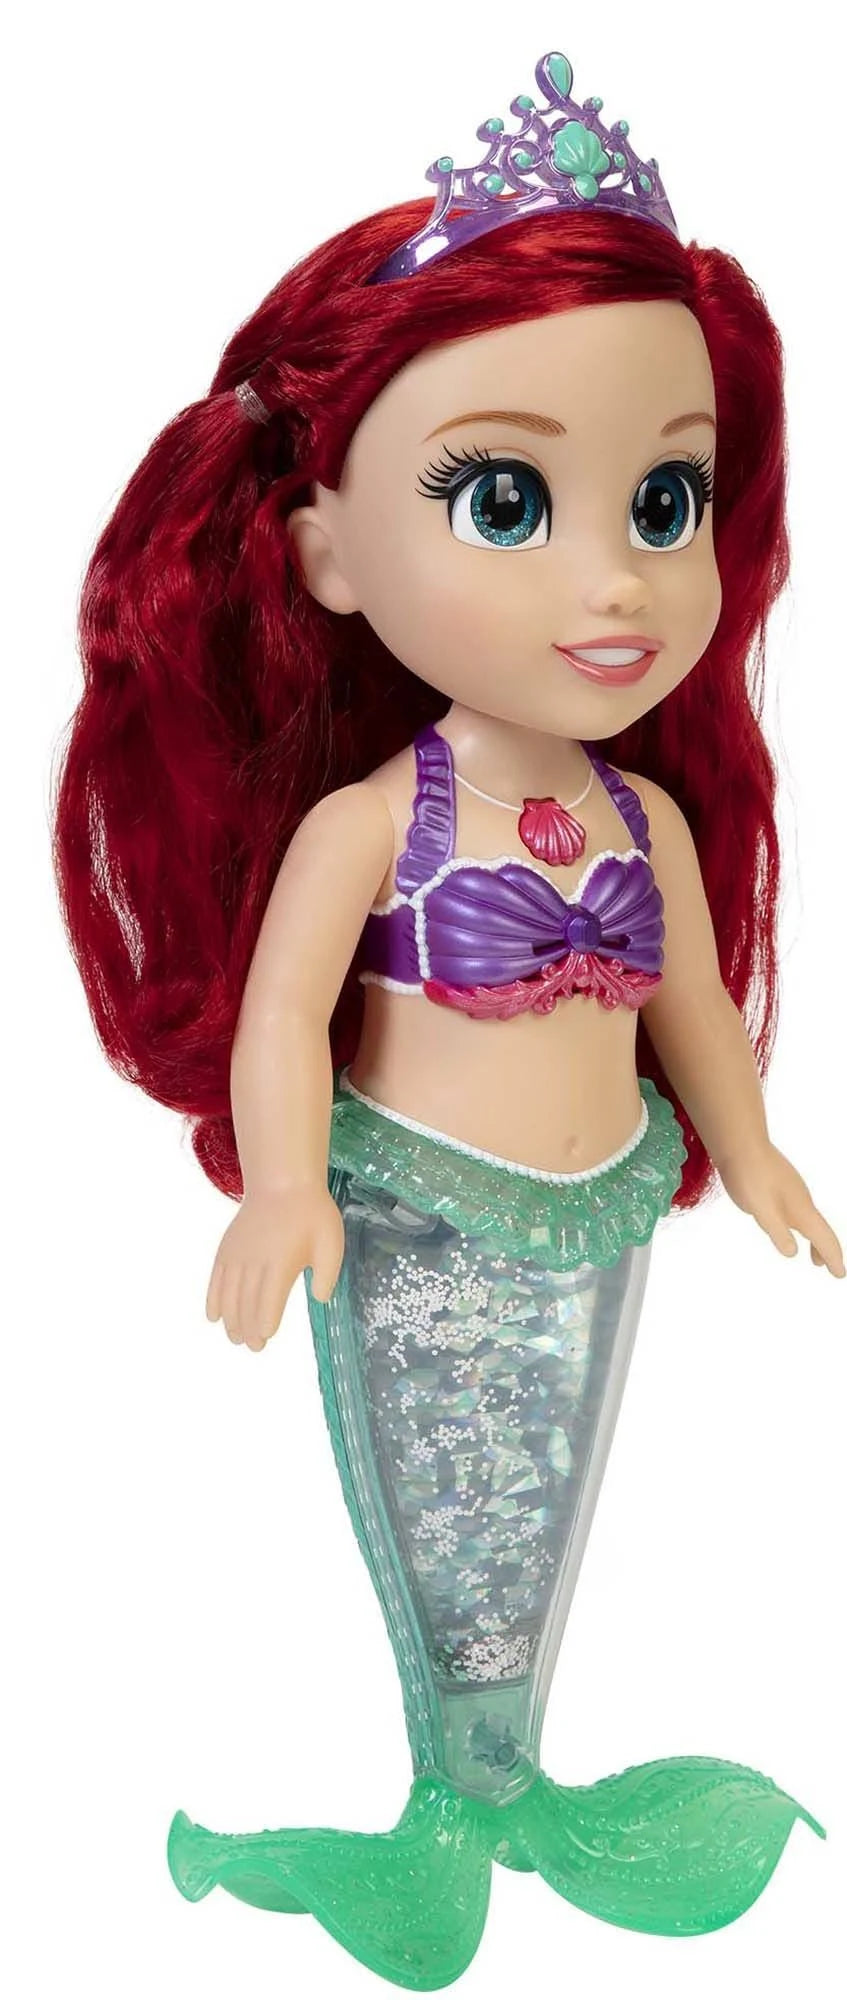 Disney Princess My Singing Friend Ariel Doll